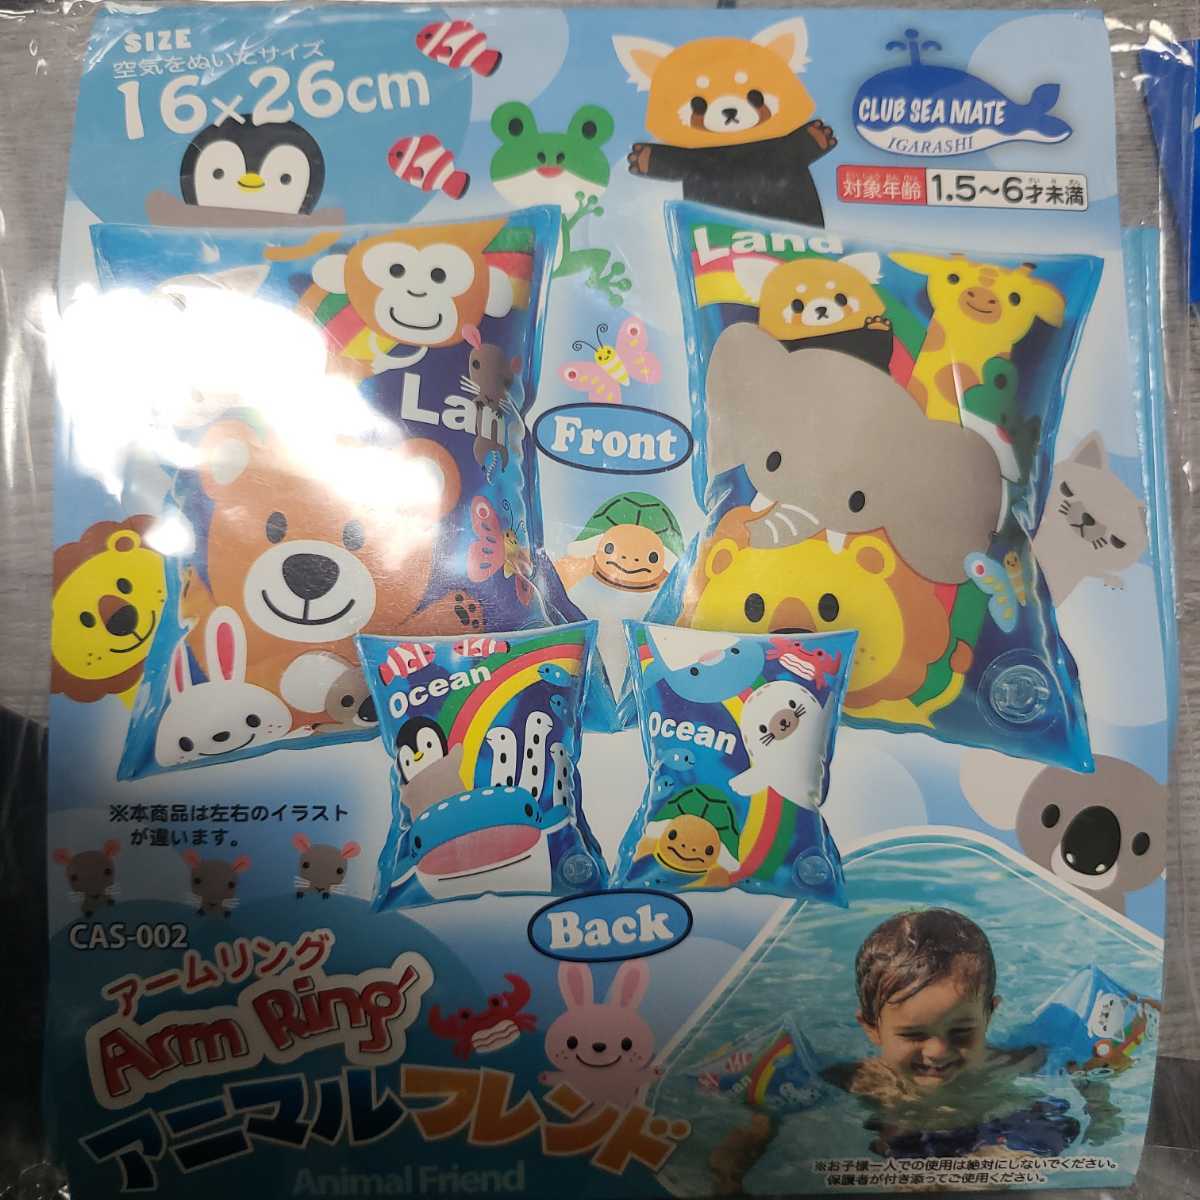 [ new goods ] arm ring floating tool swim ring baby Kids .... animal pattern animal ..... lion ..